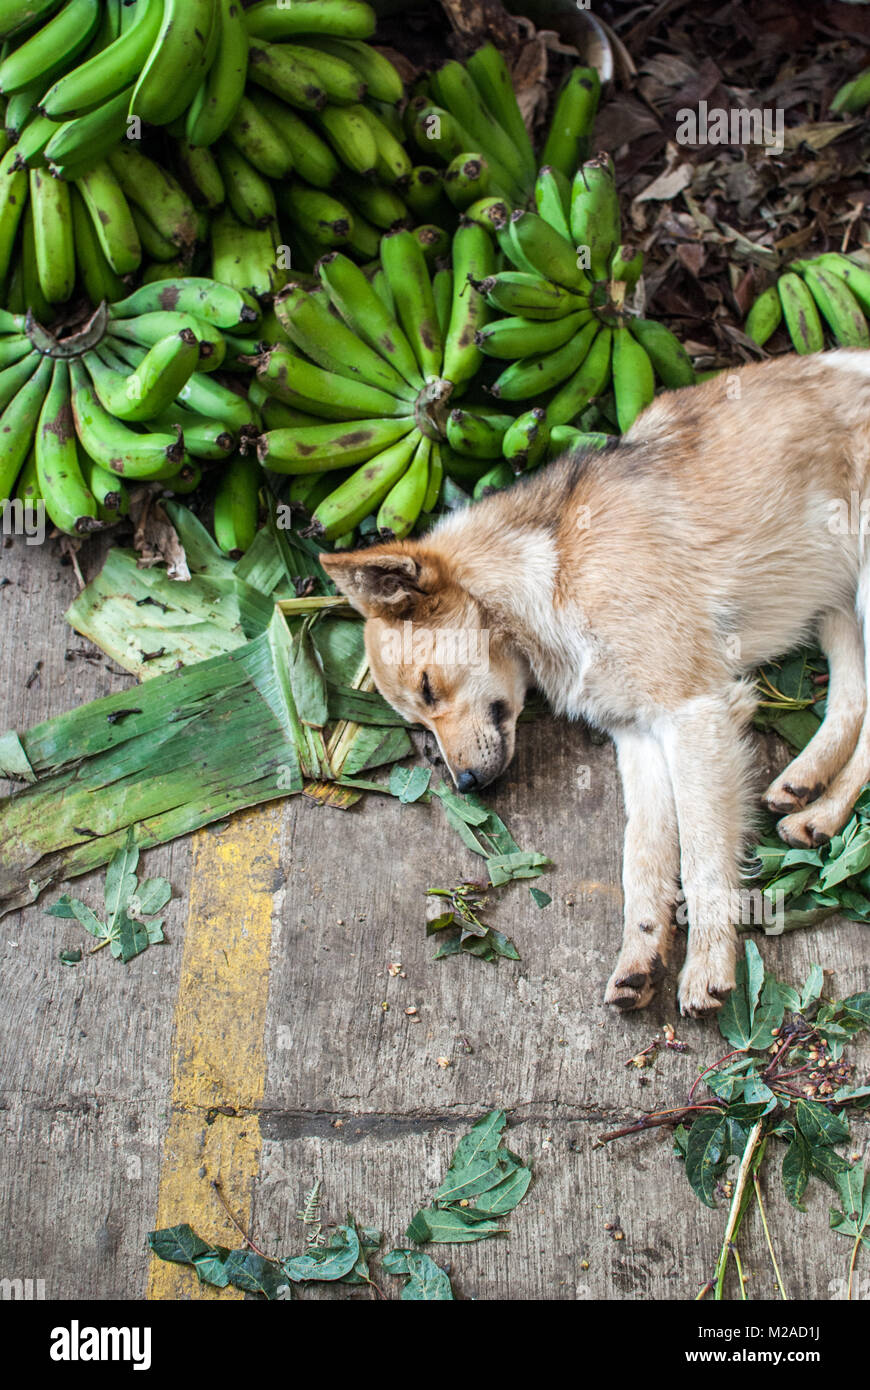 Un chien dormir sur un tas de plantains sur le sol en béton d'un marché de Silvia, Colombie Banque D'Images